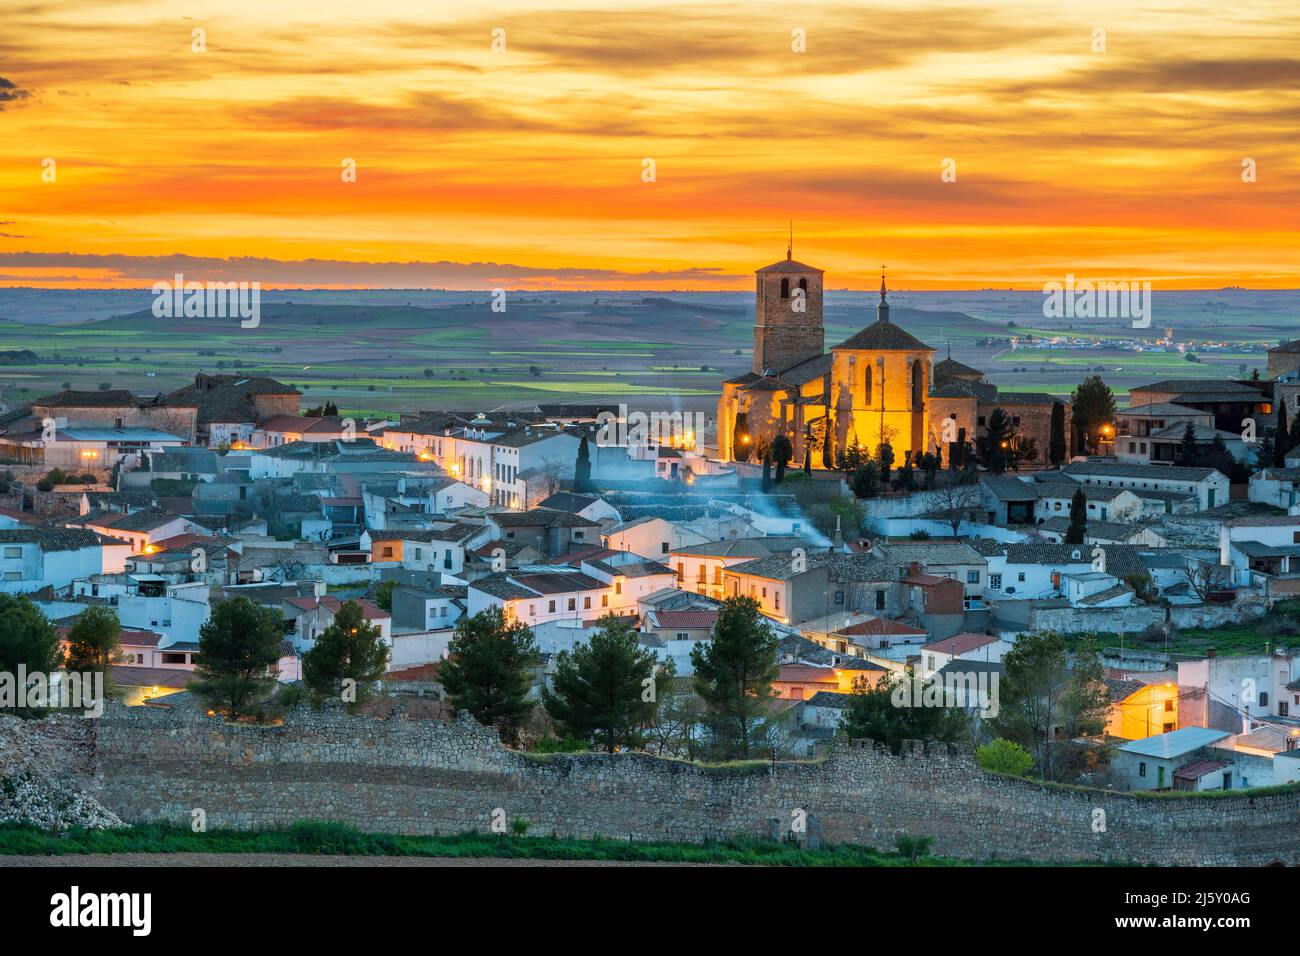 Coucher de soleil pittoresque à Belmonte, Castilla-la Mancha, Espagne Banque D'Images